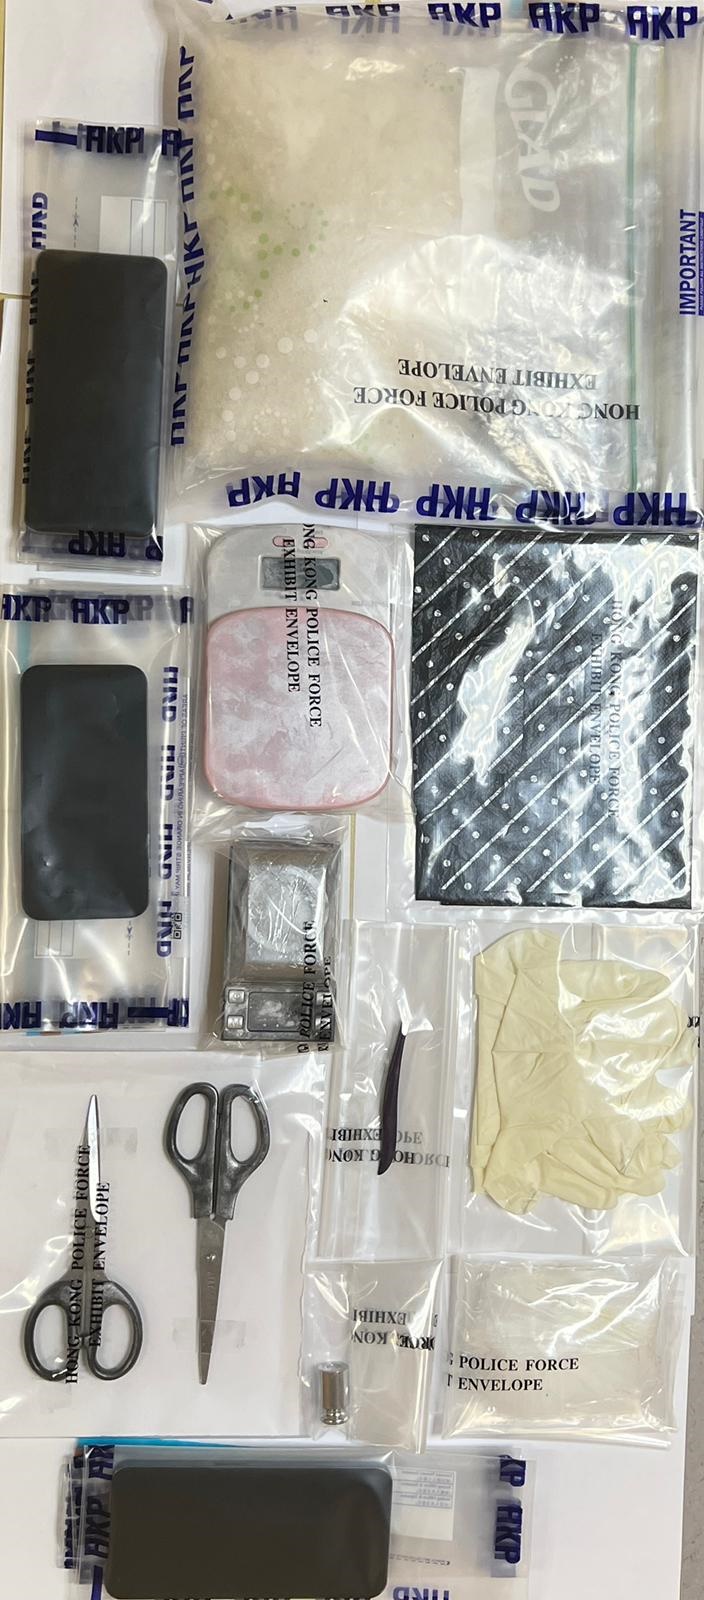 警方所搜獲的冰毒及一批毒品包裝工具。